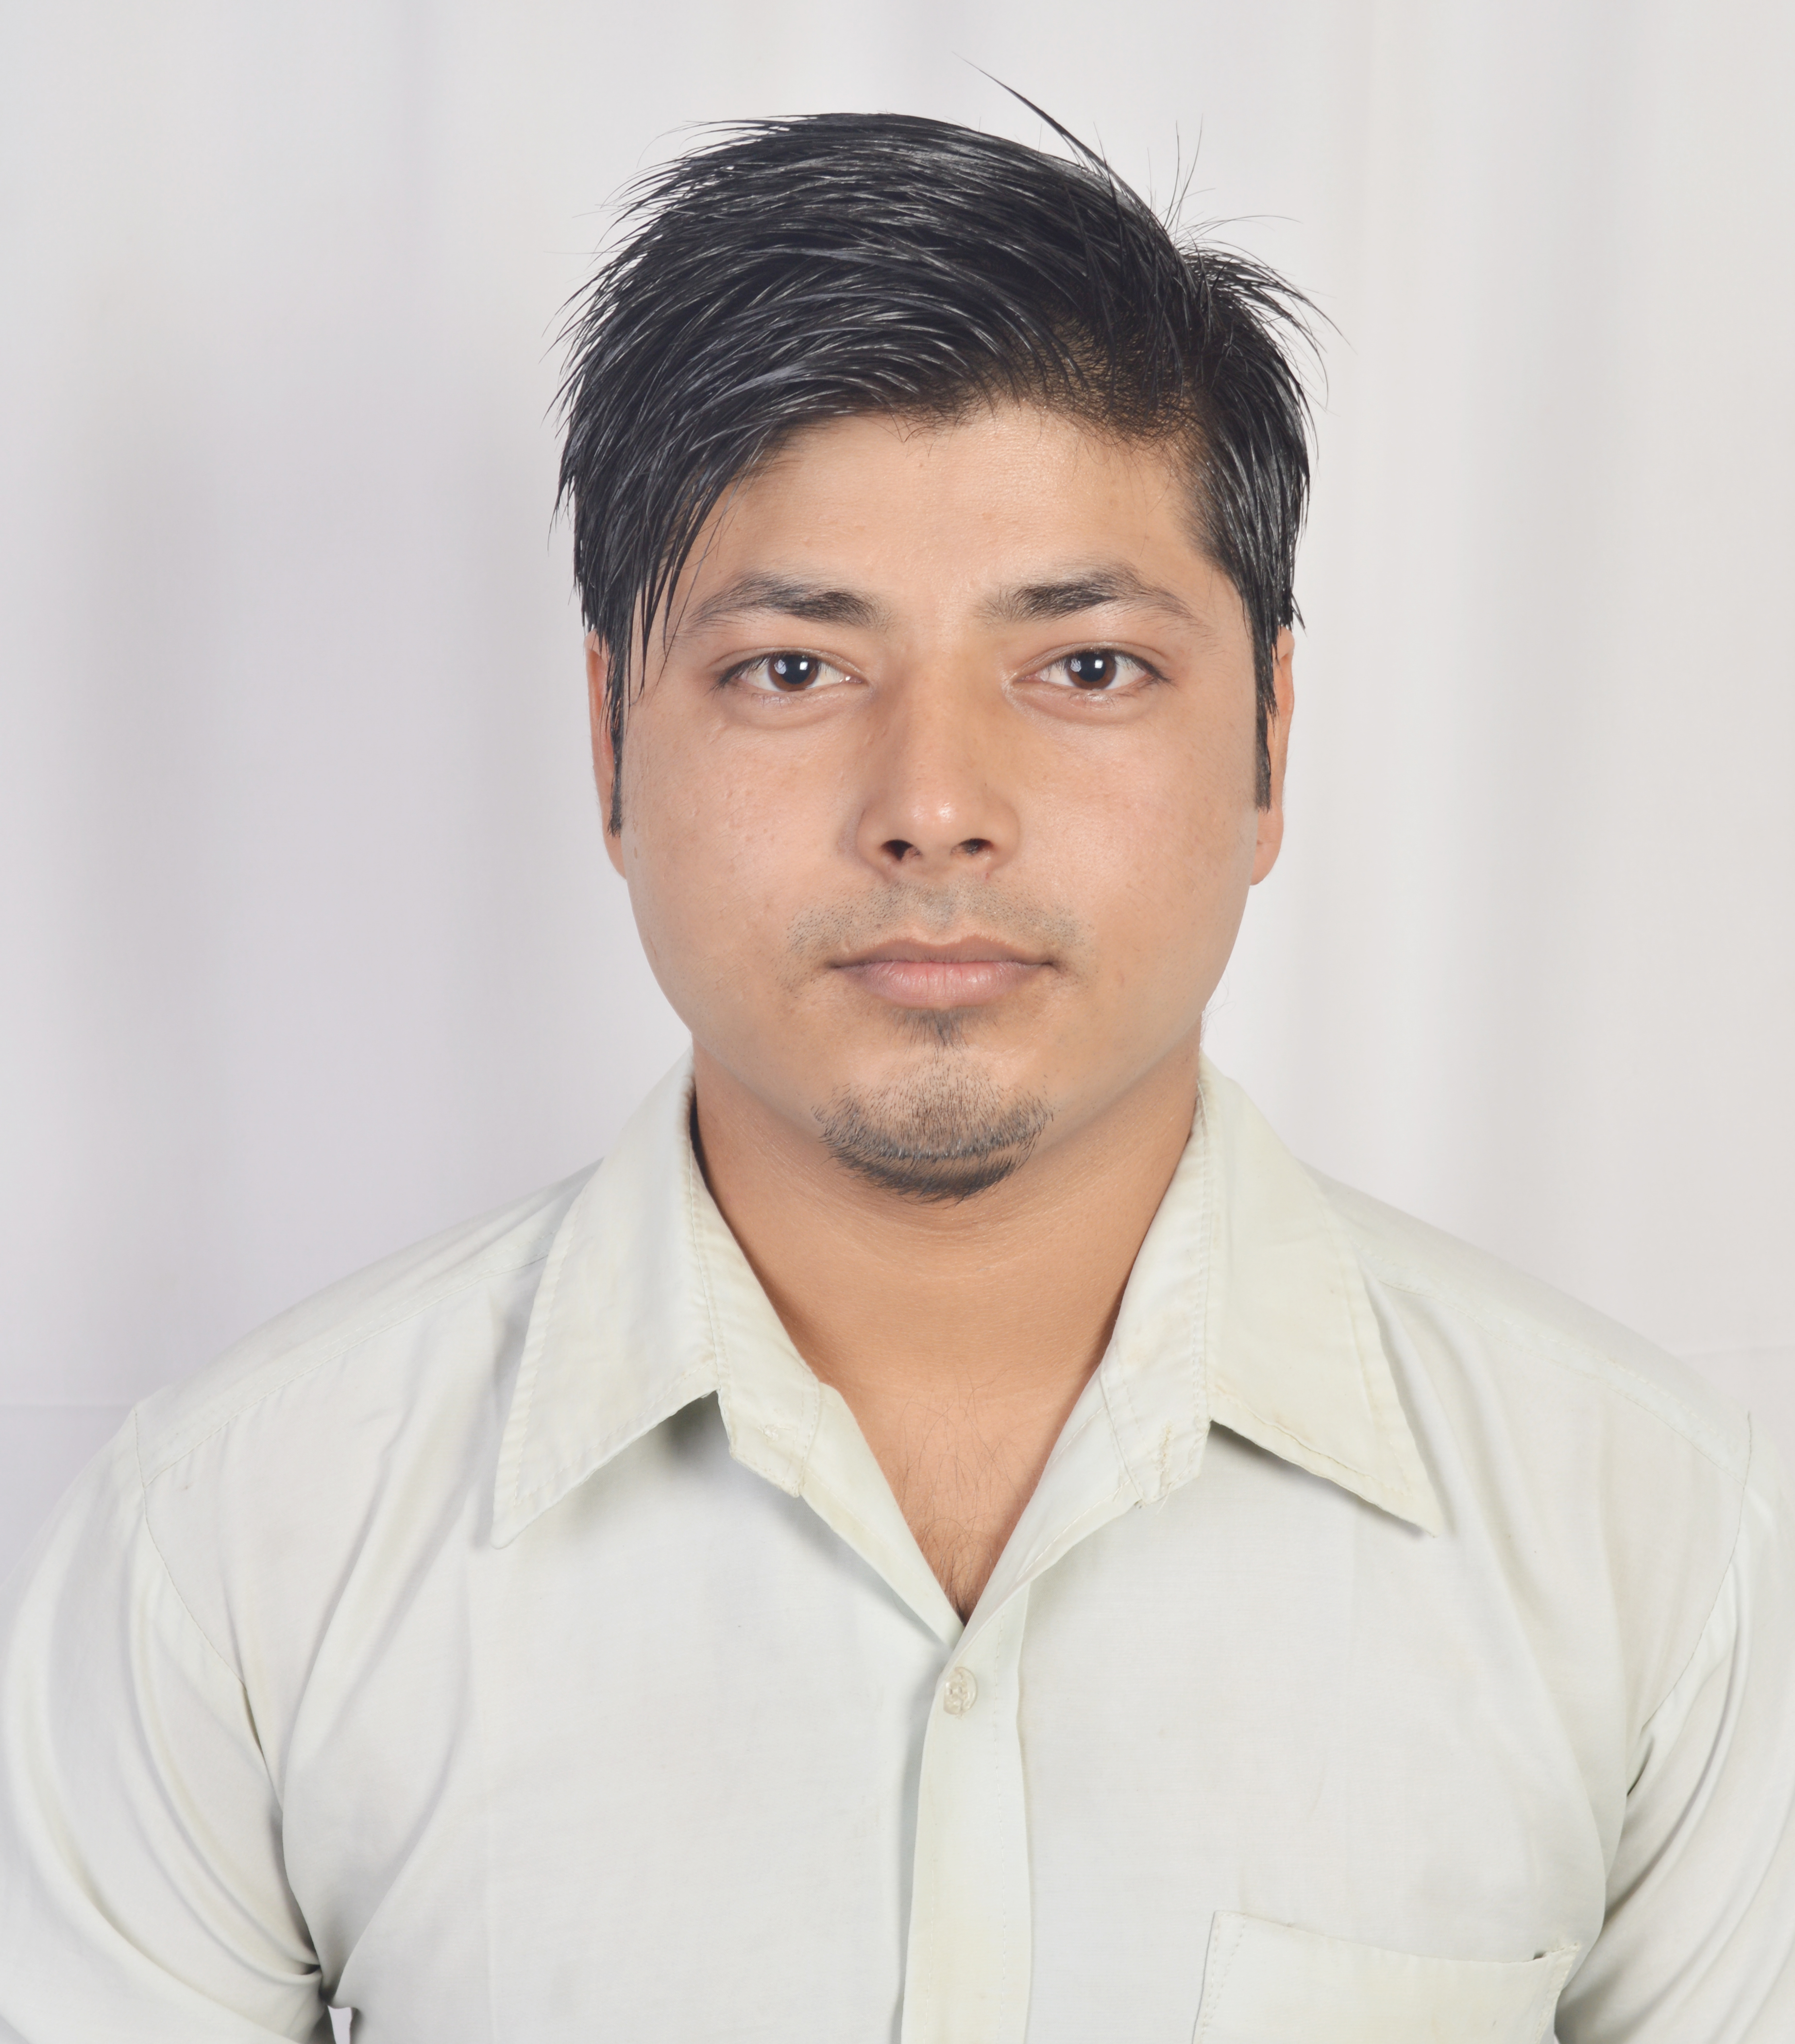 Mr. Dharmendra Dulal